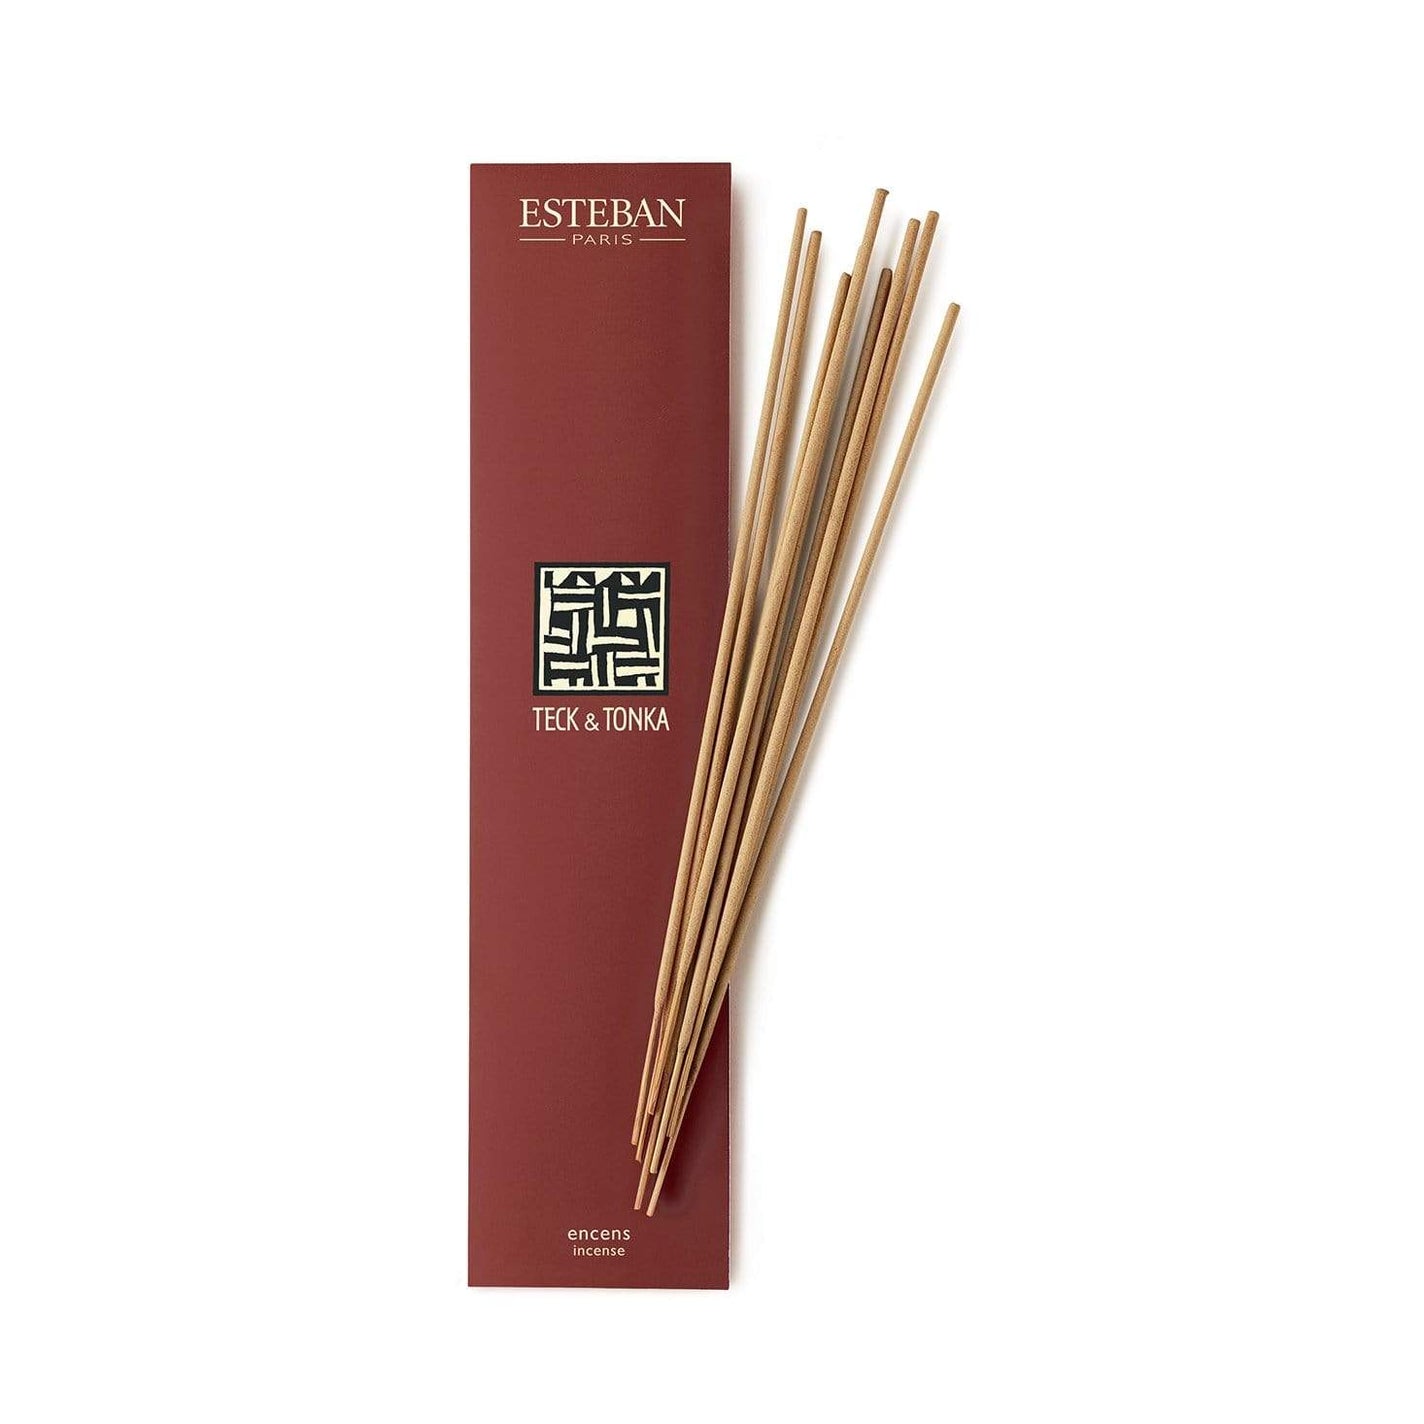 Esteban Teck & Tonka Bamboo Incense